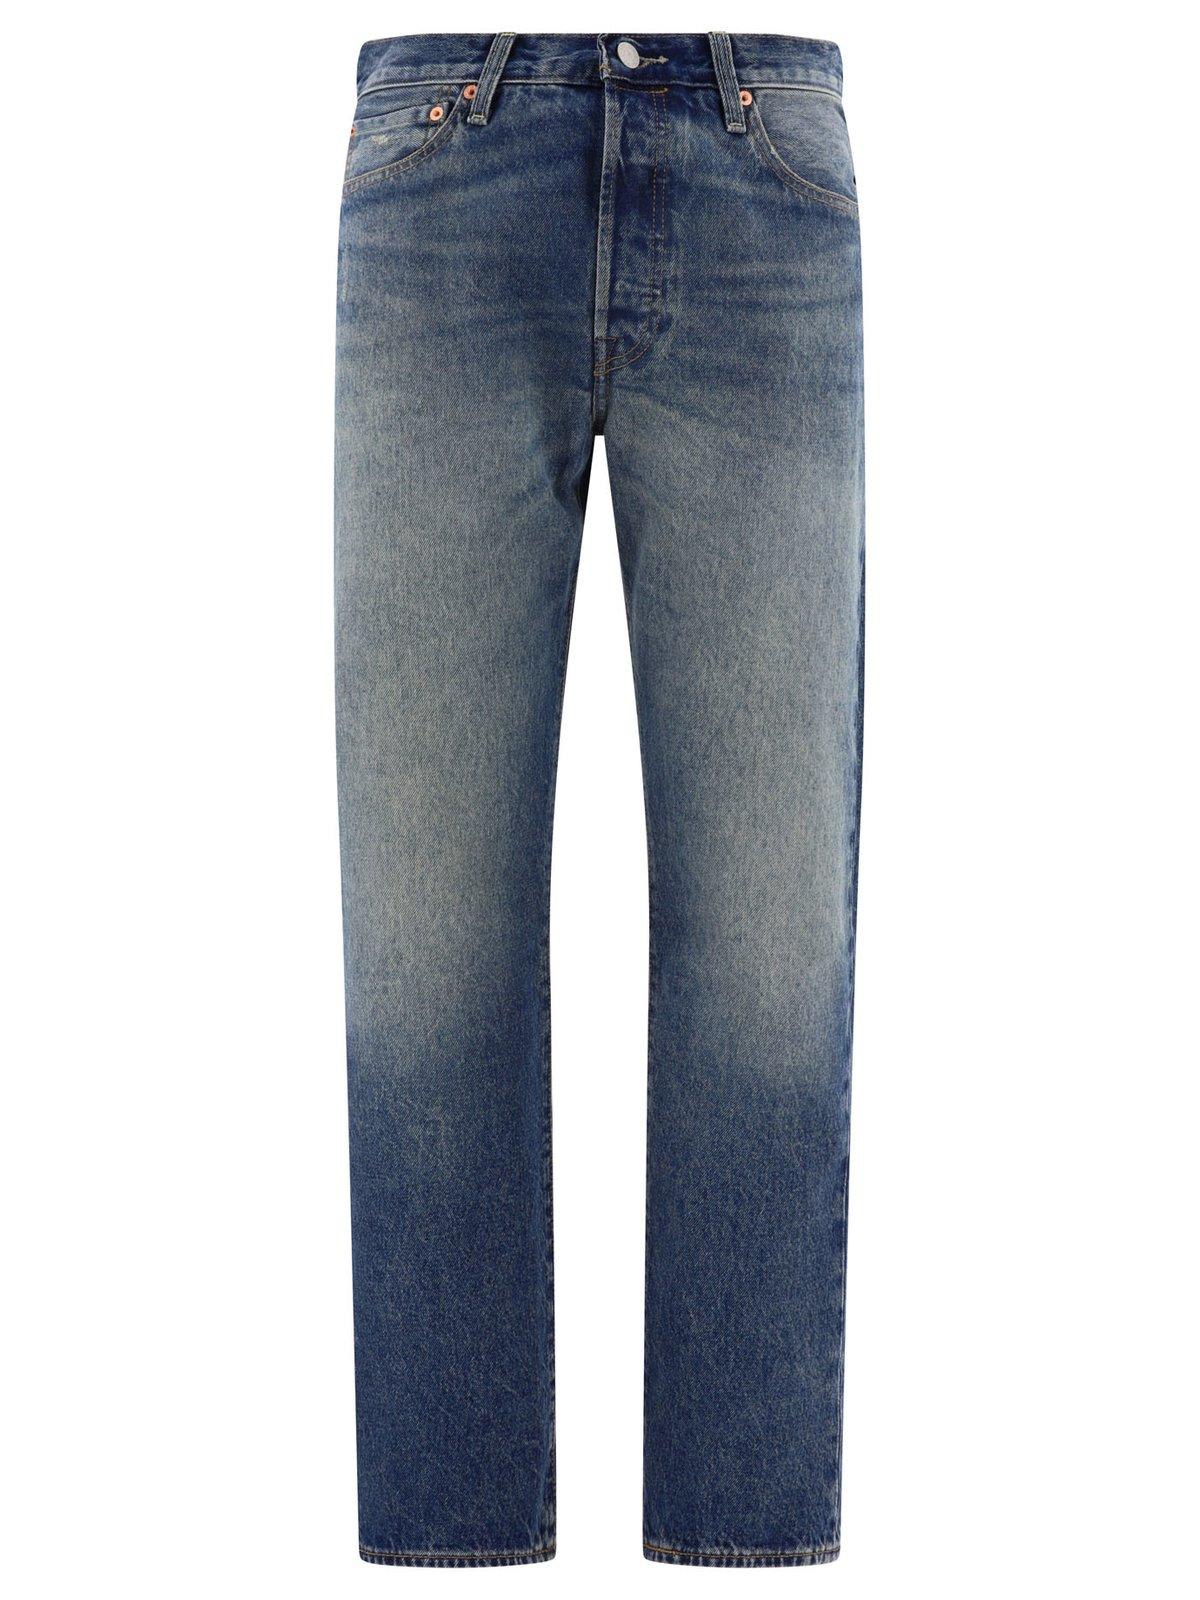 Shop Levi's 501 54 Mid Rise Denim Jeans